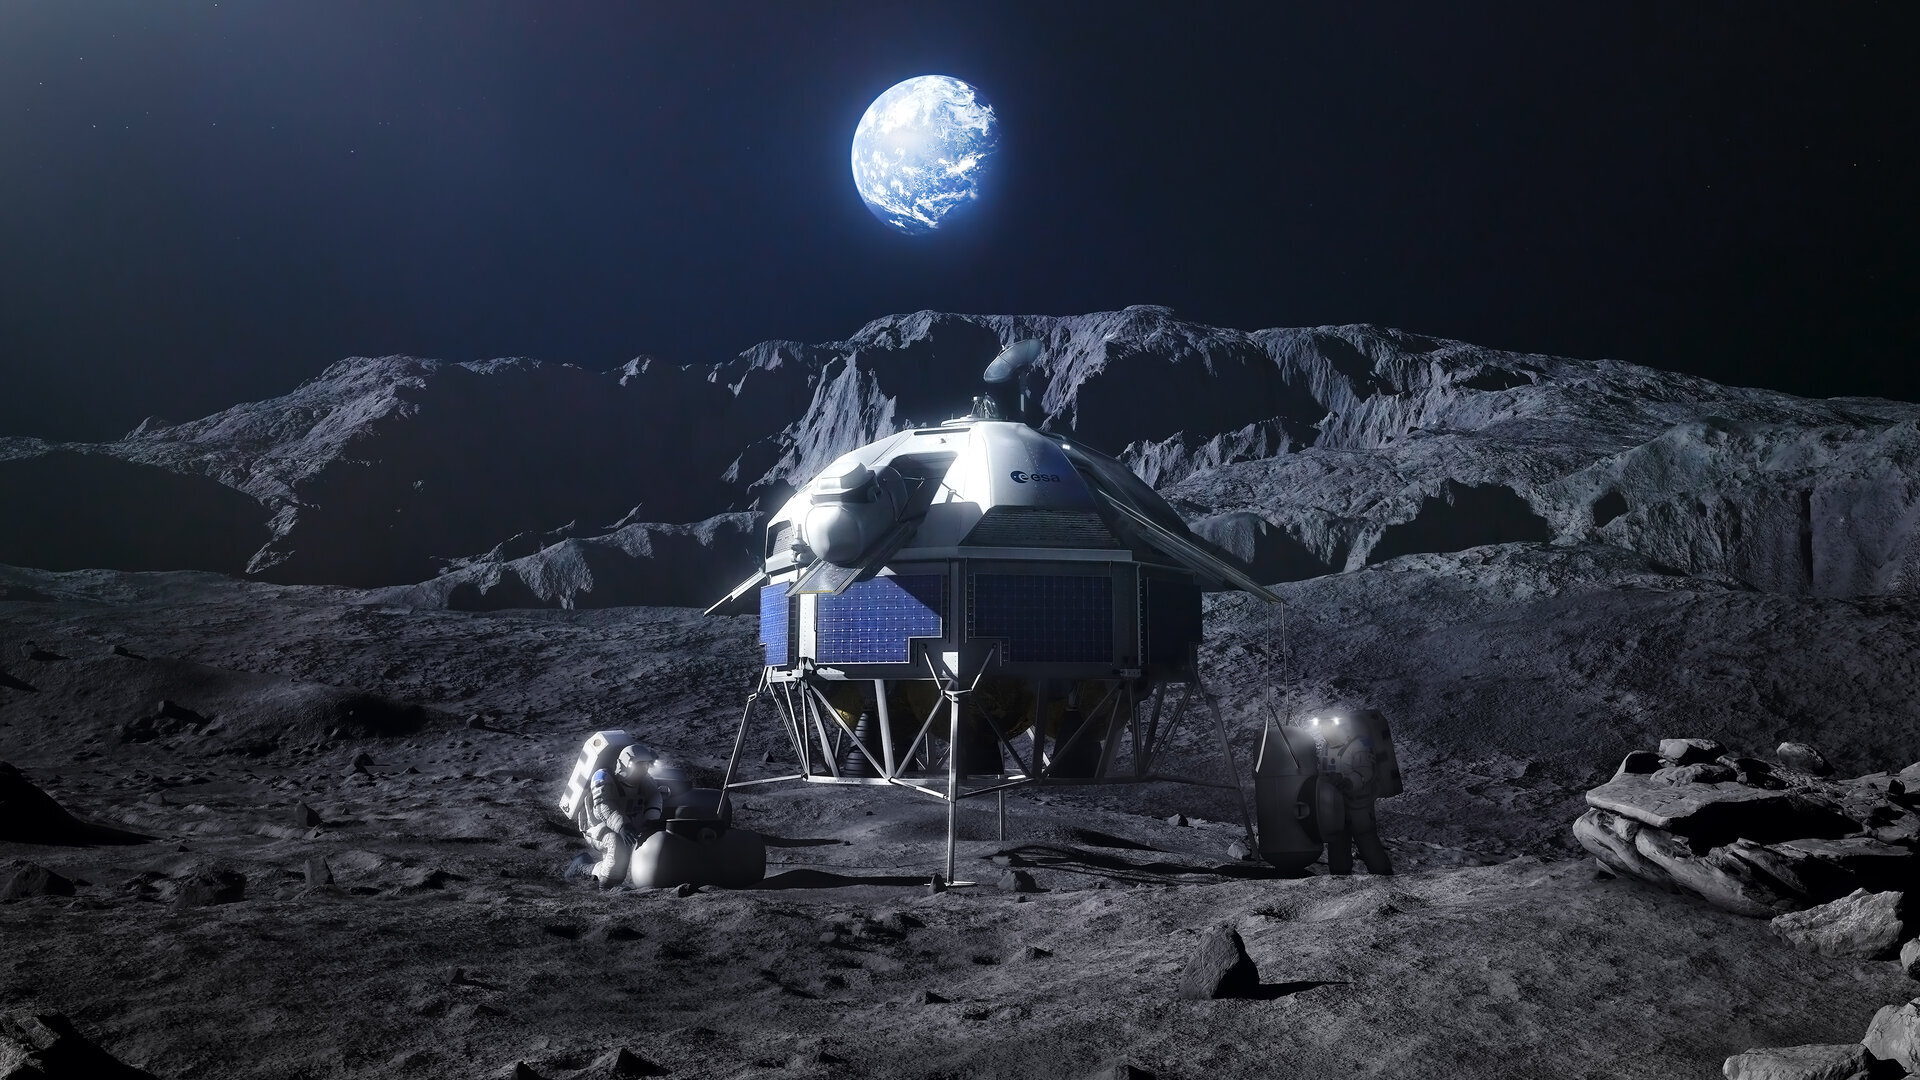 vr-rendering-of-the-argonaut-lunar-lander-pillars